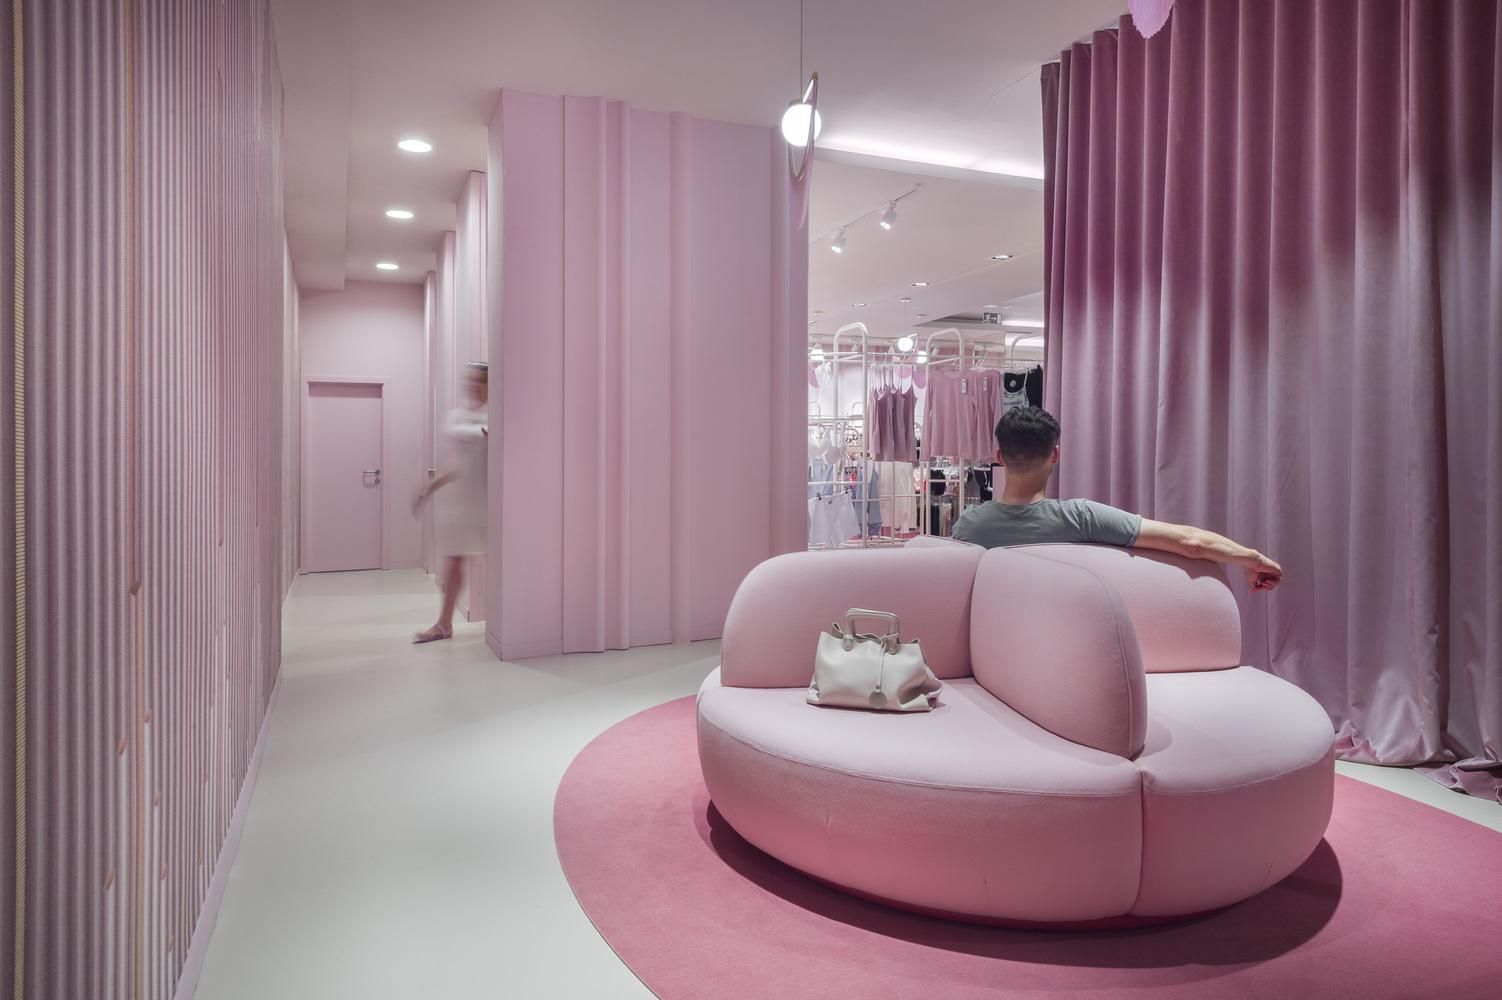 50 оттенков розового: интерьер магазина из Словении, который влияет на психику – фото